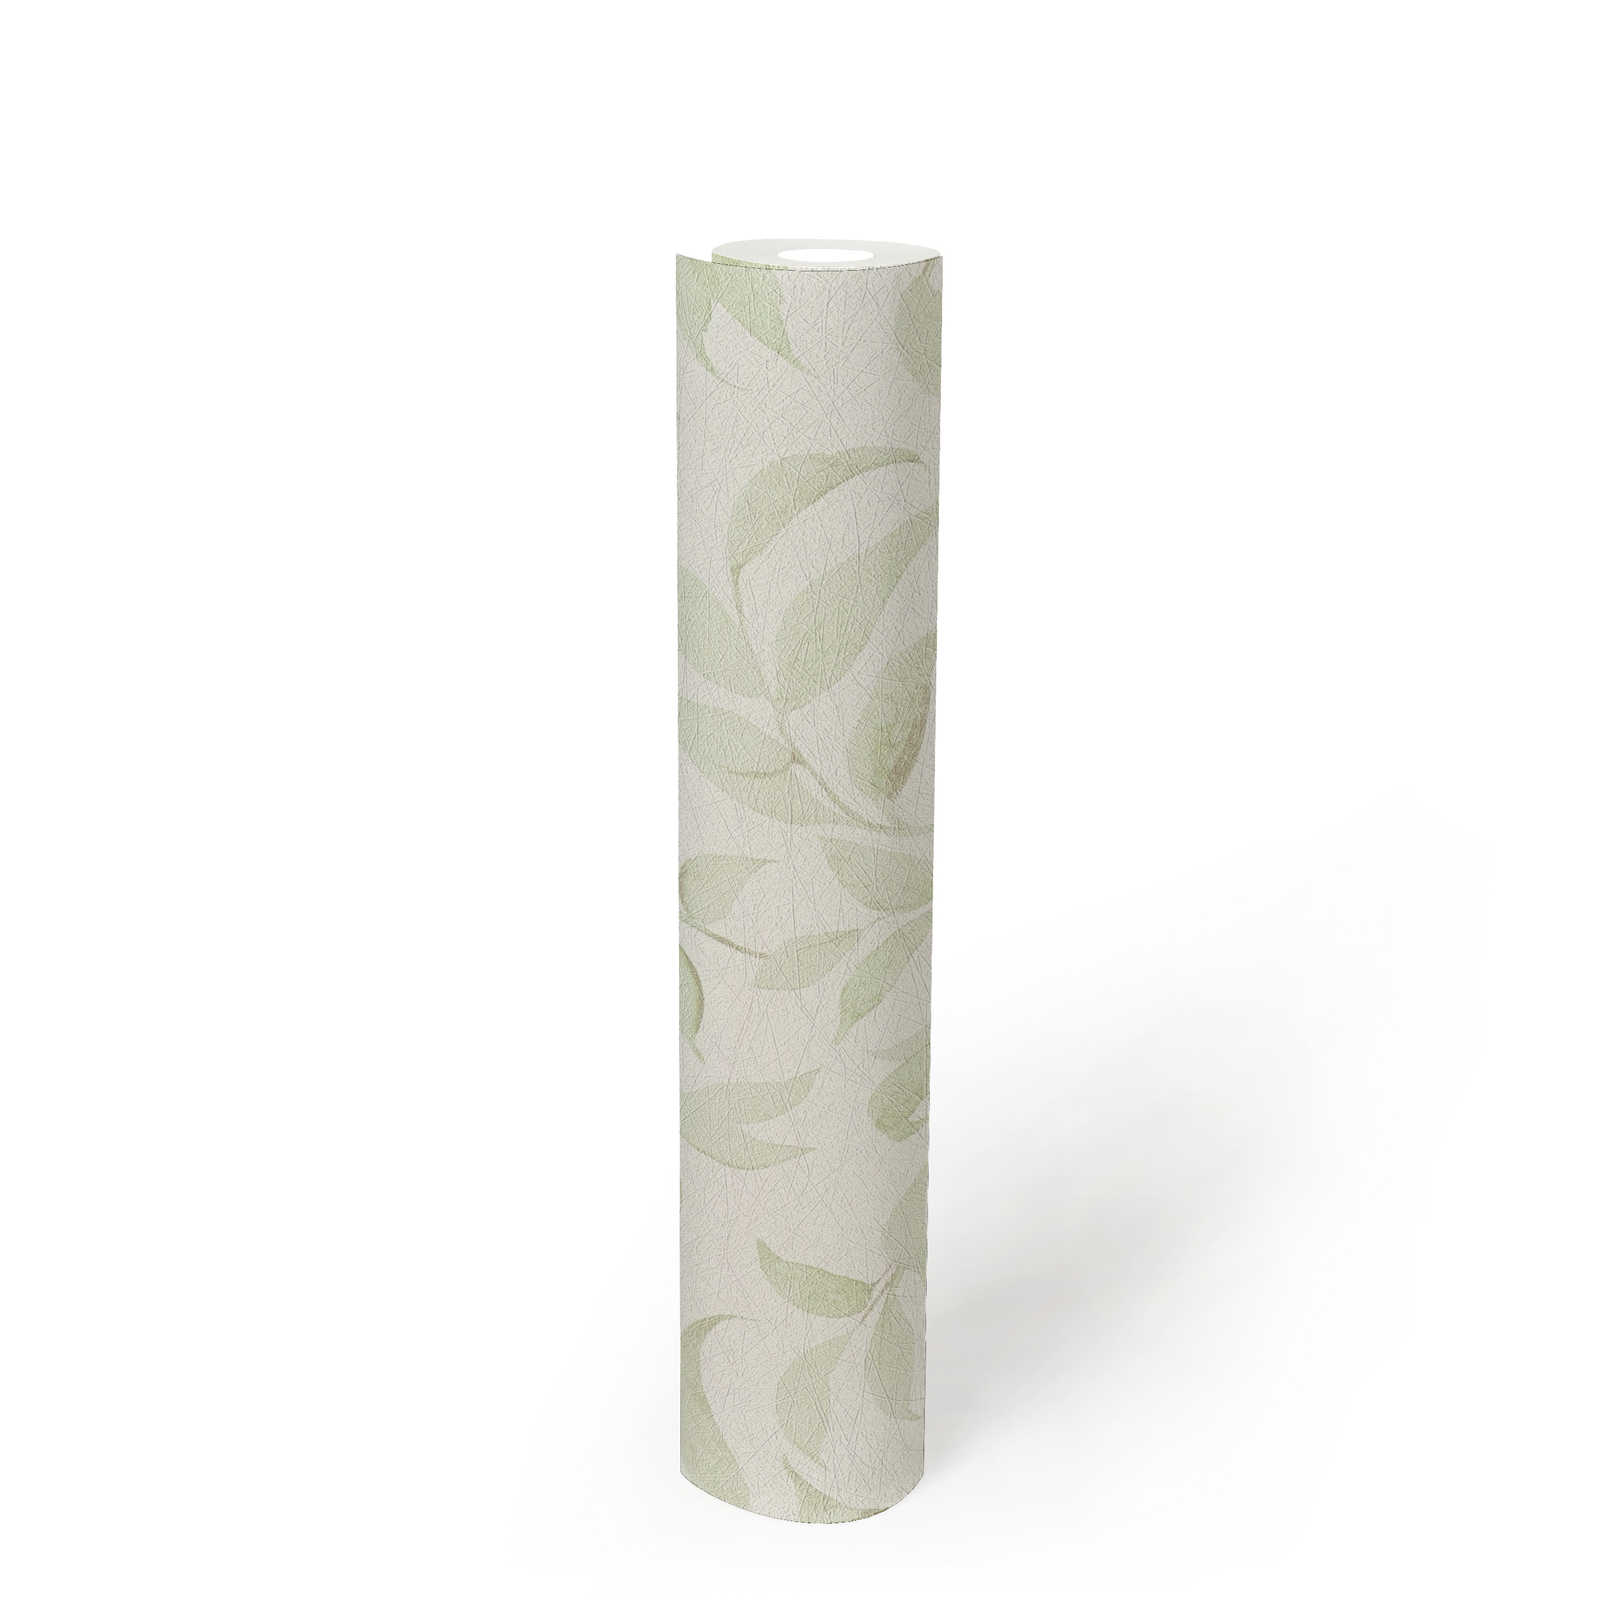             Papel pintado Hojas brillo floral texturizado - blanco, verde
        